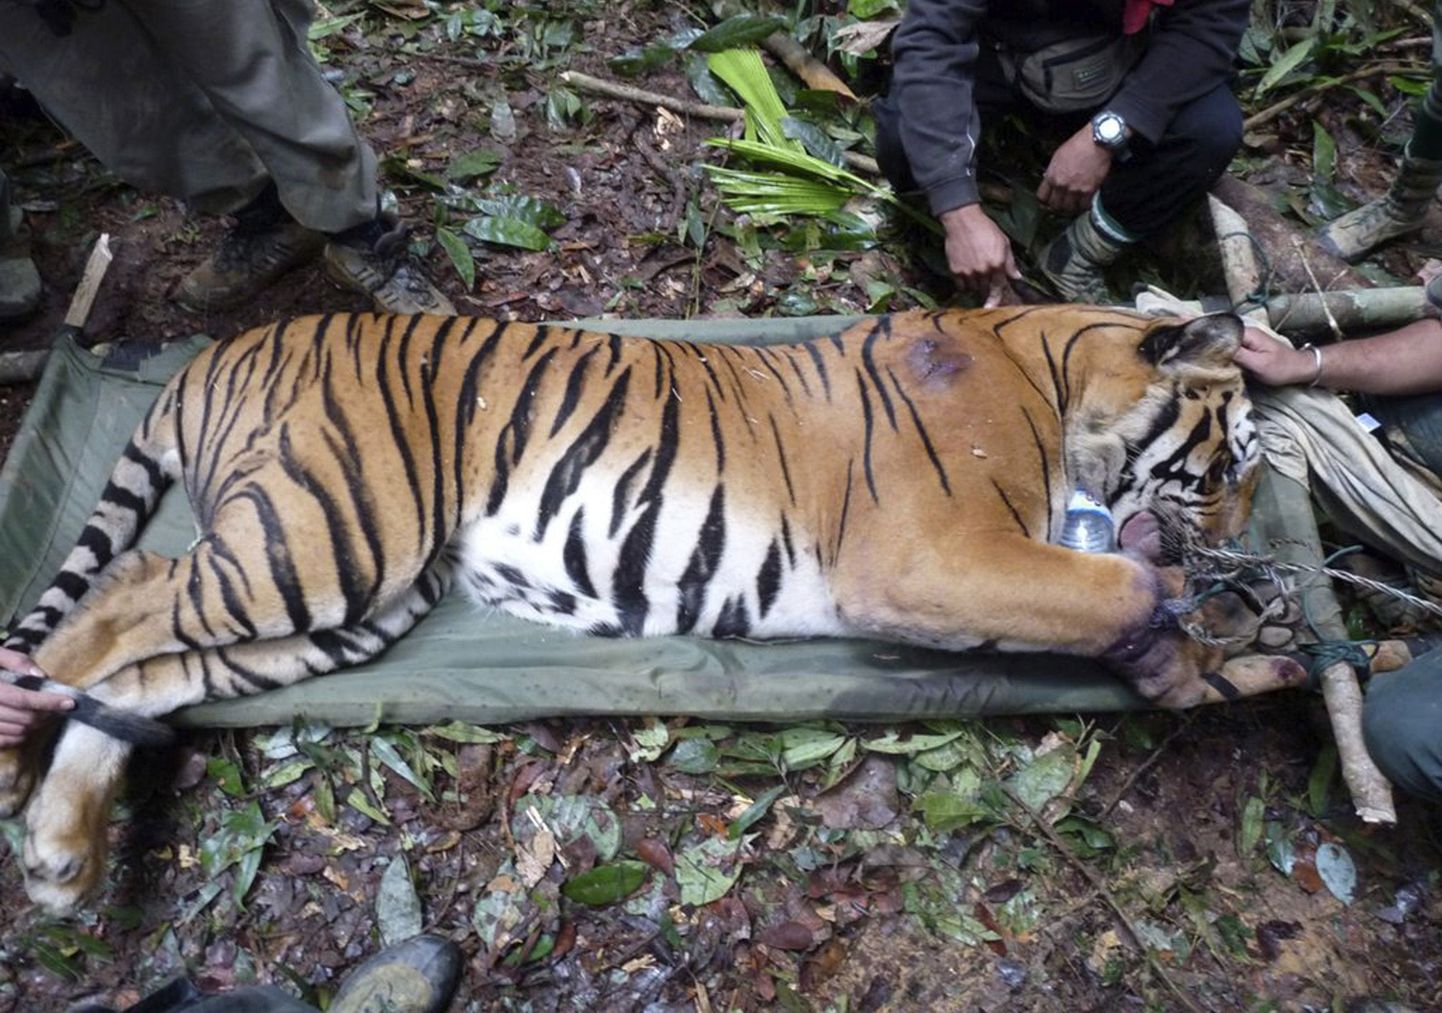 Salaküttide tõttu vigastada saanud tiiger